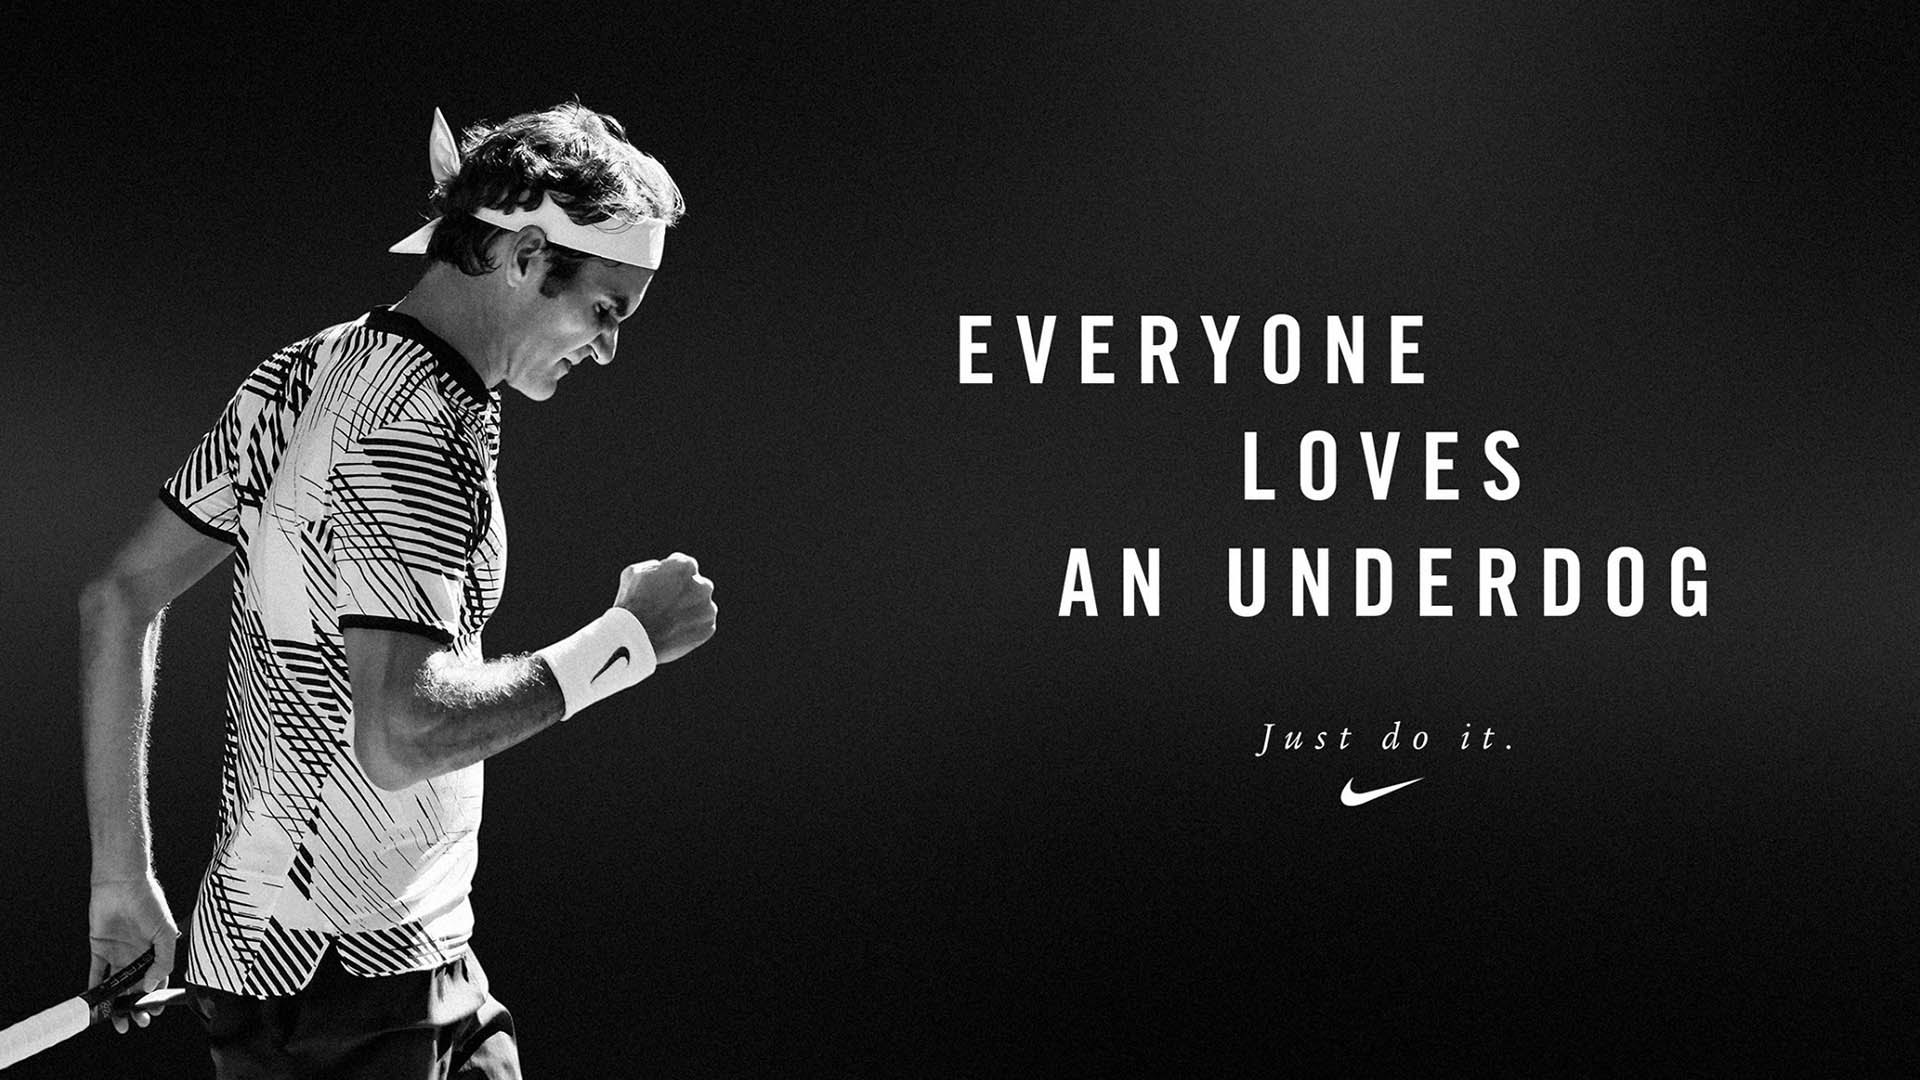 Roger Federer - Just do it